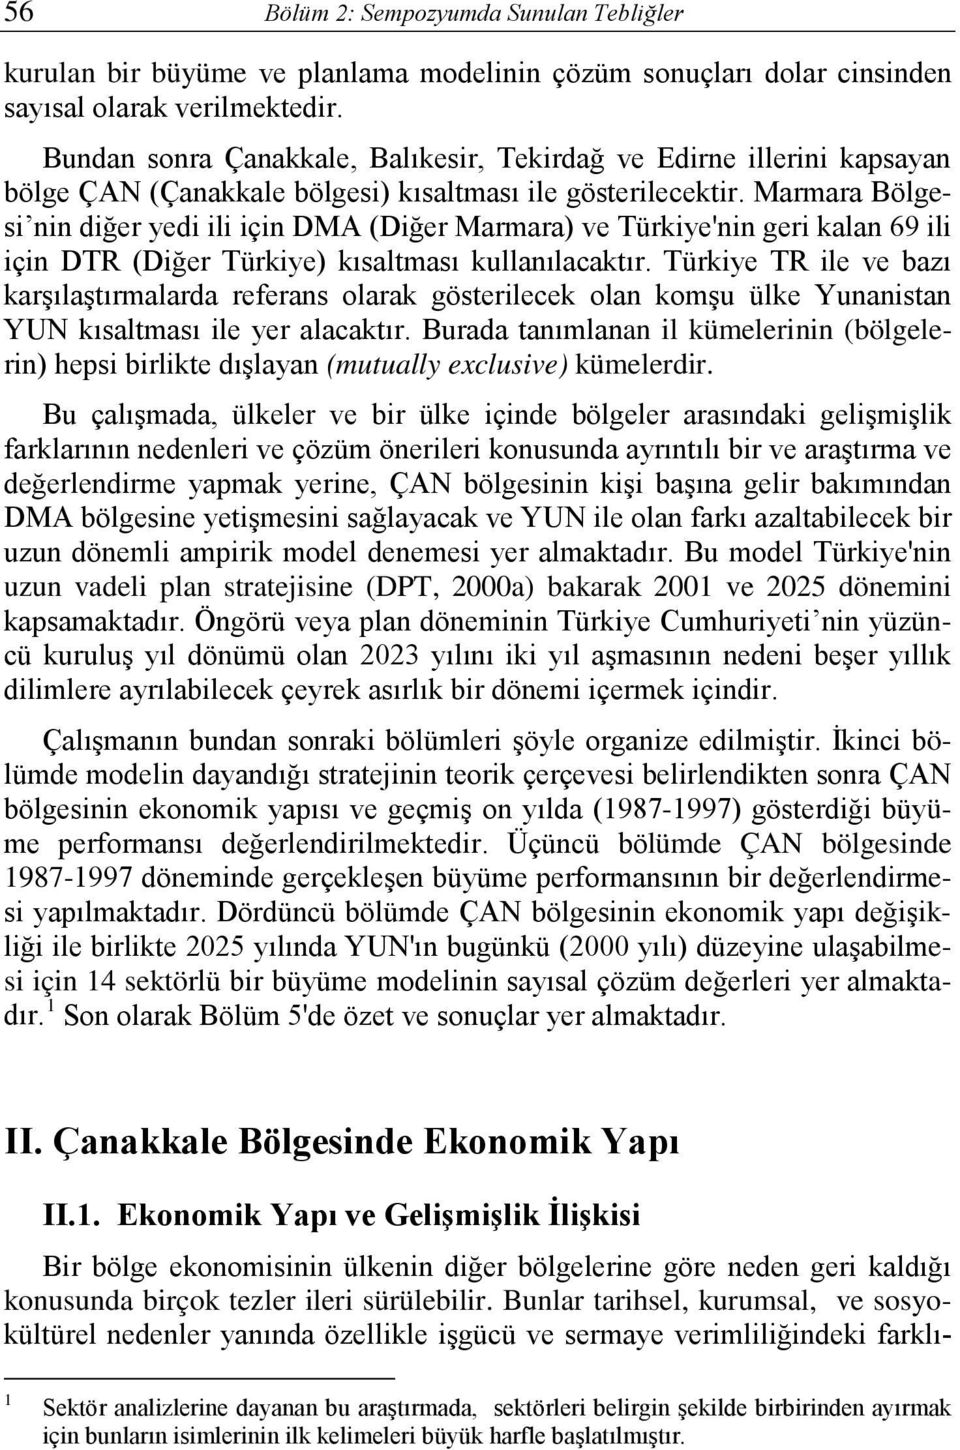 Marmara Bölgesi nin diğer yedi ili için DMA (Diğer Marmara) ve Türkiye'nin geri kalan 69 ili için DTR (Diğer Türkiye) kısaltması kullanılacaktır.